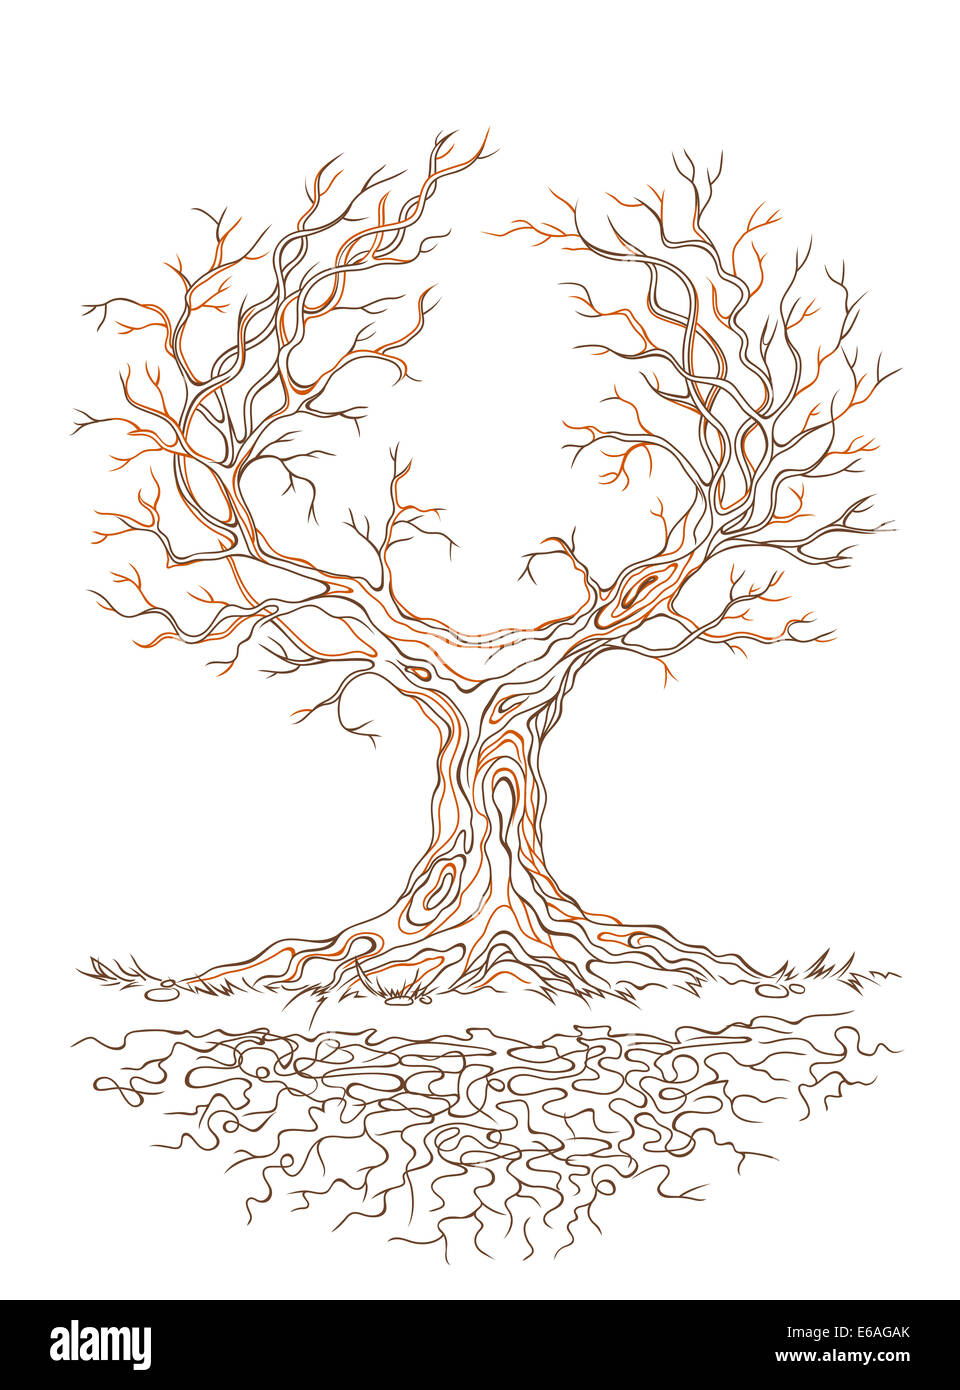 Grafico lineare antico e grande stantio branchy tree Foto Stock